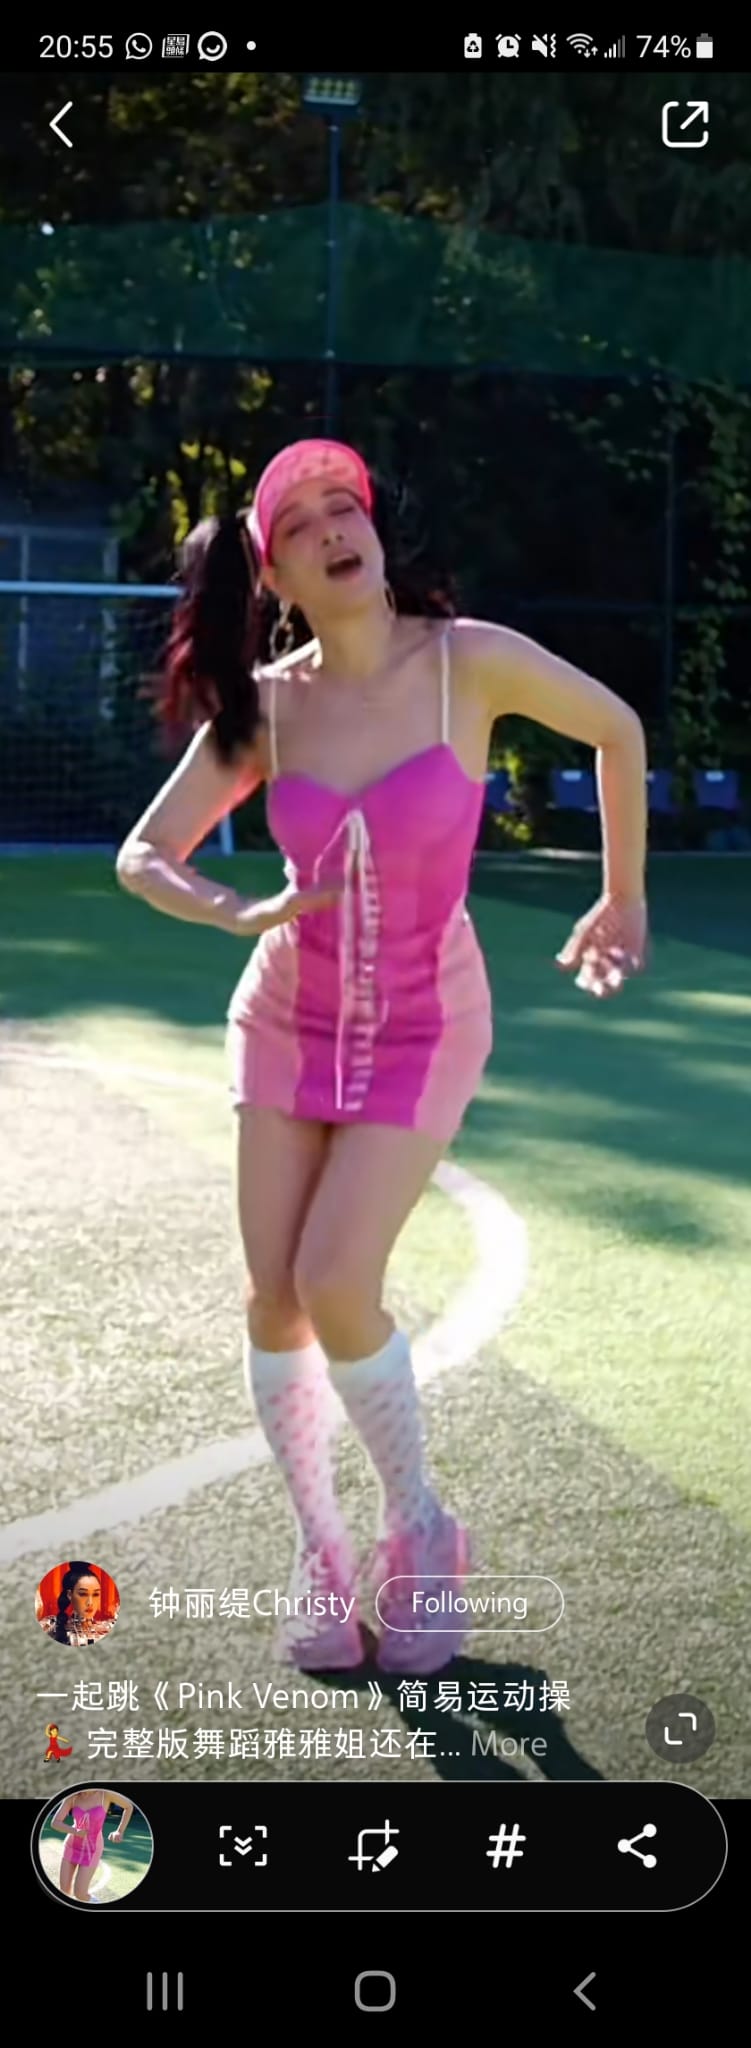 鍾麗緹在片中大跳名為《Pink Venom》的健身舞。